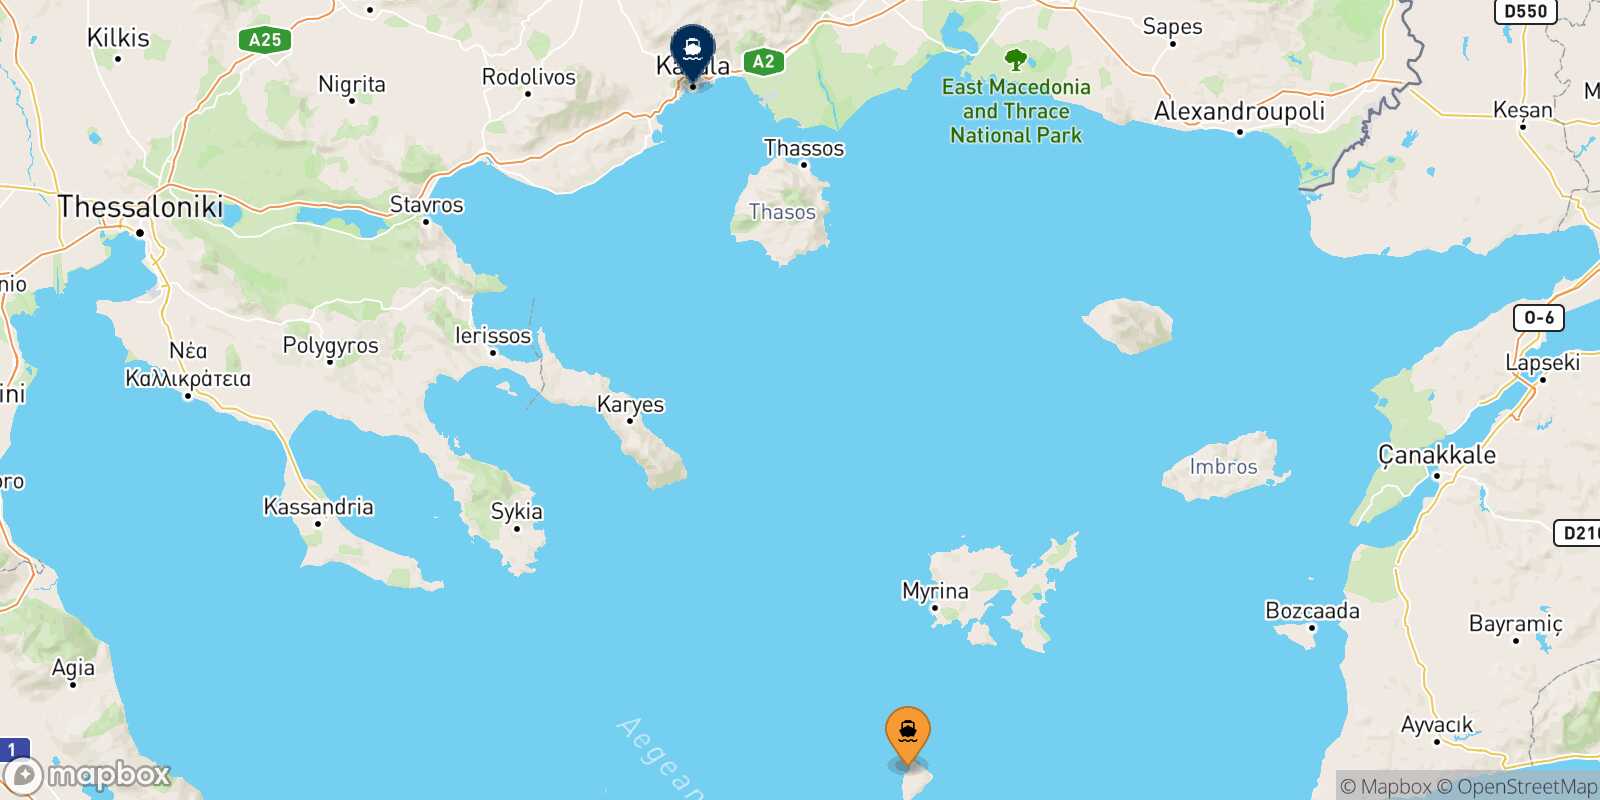 Mappa della rotta Agios Efstratios Kavala